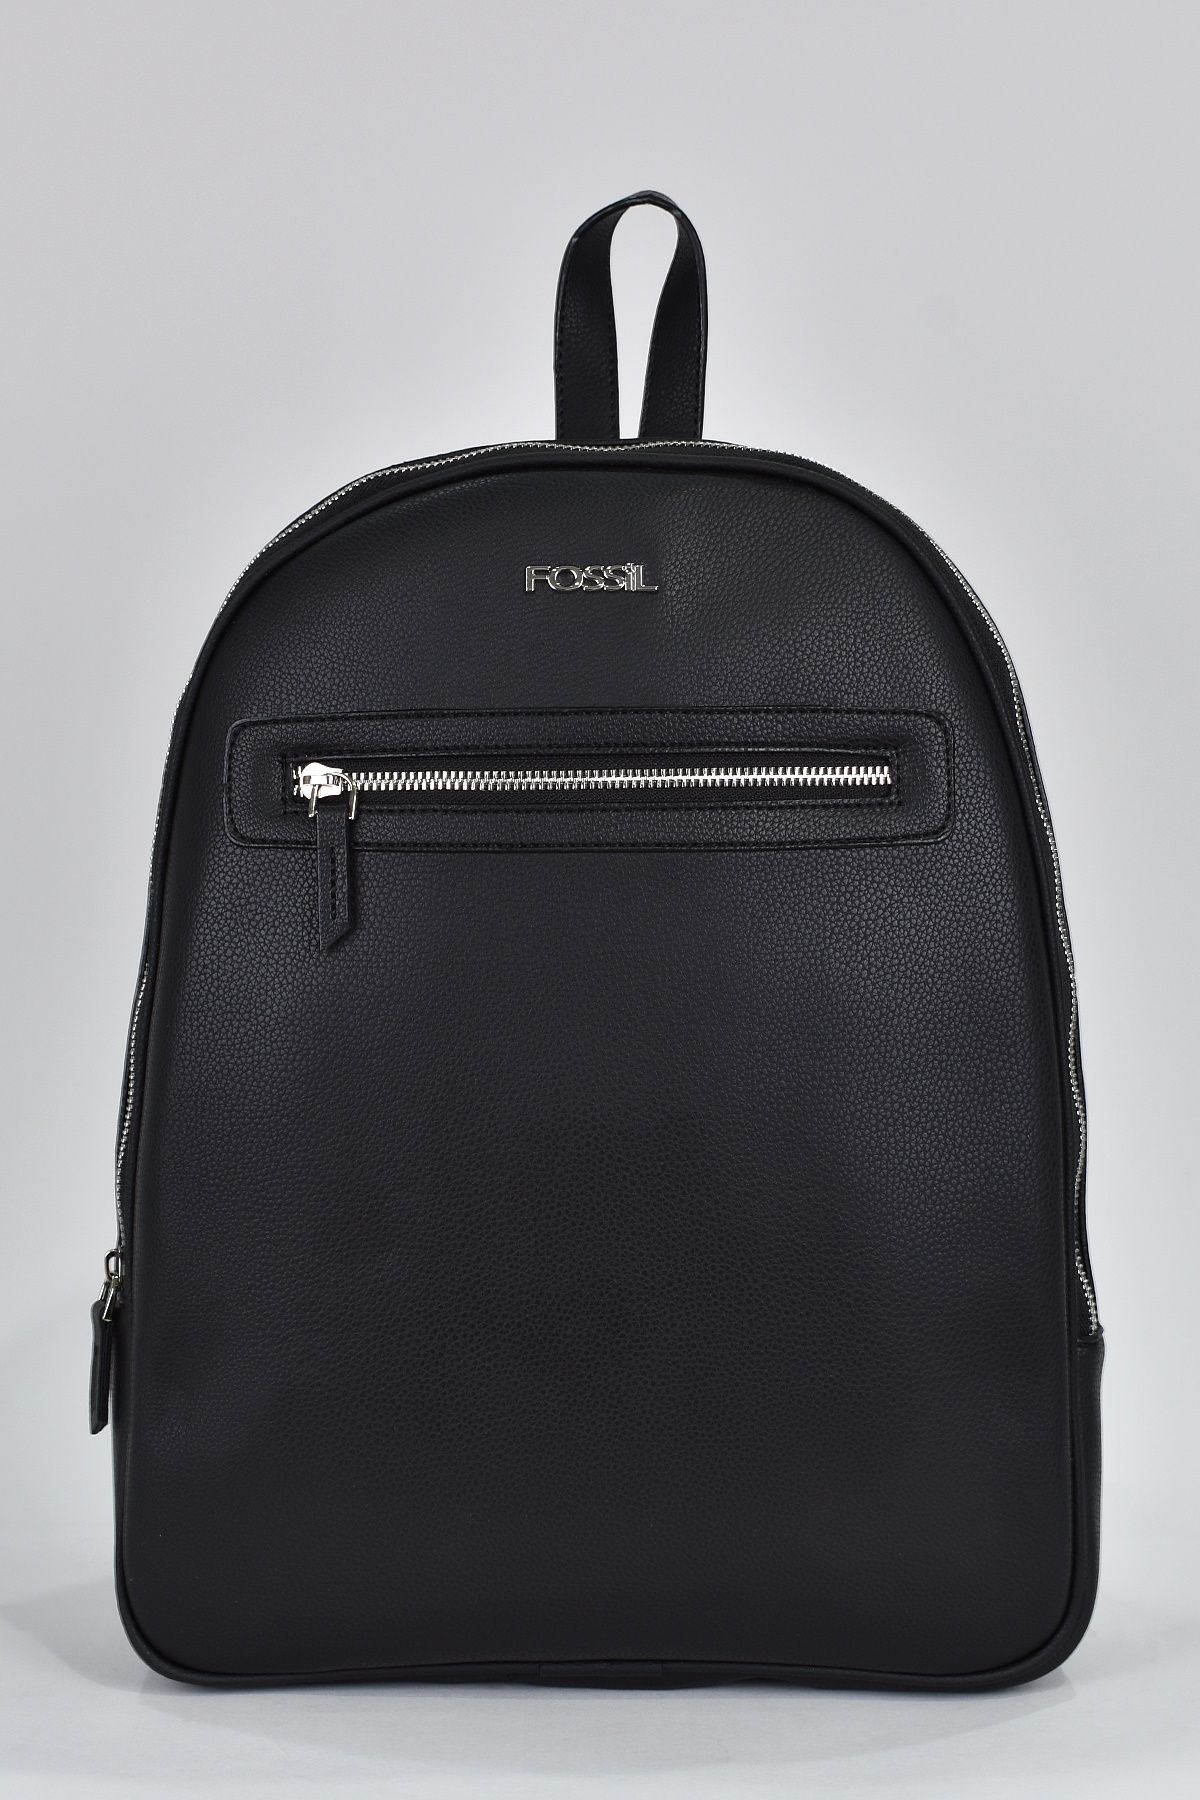 FOSSIL Megan Logo Embossed Tan Leather Backpack Purse Bag | eBay